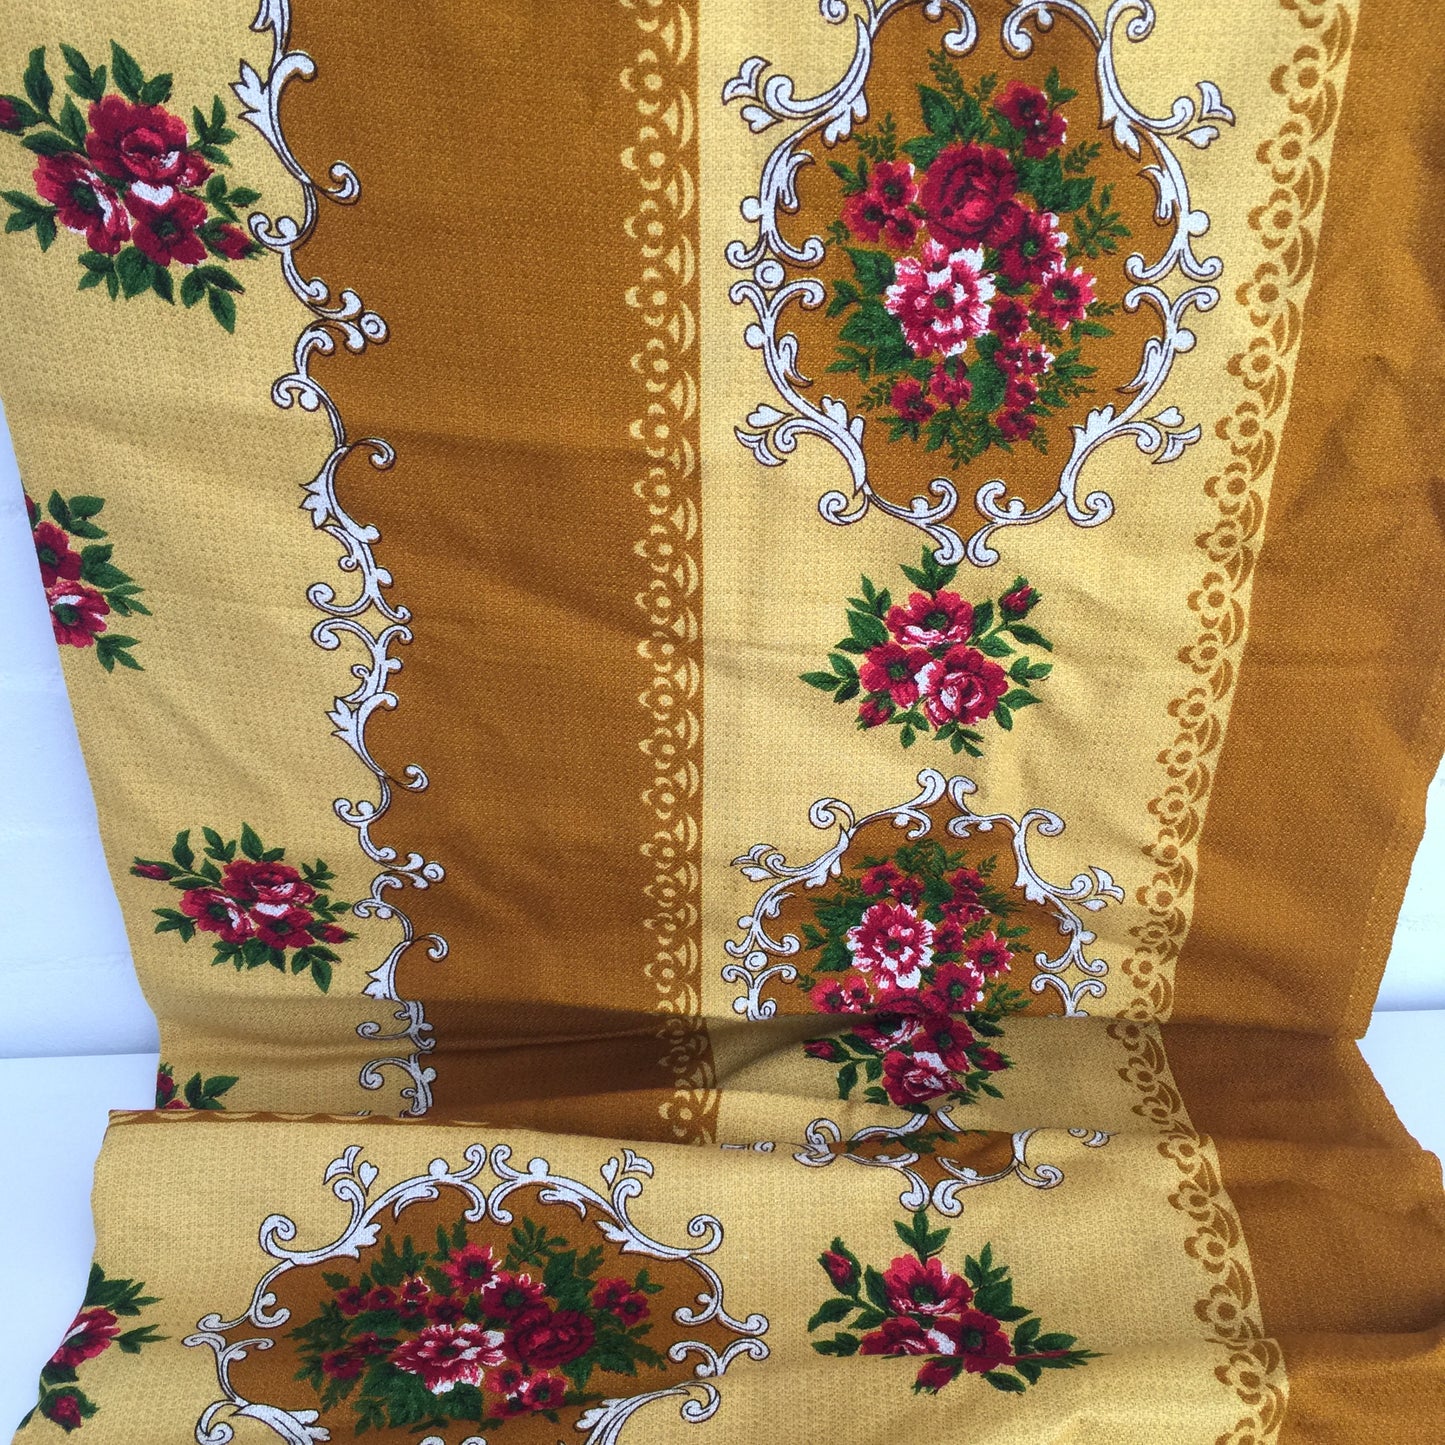 UNUSED Vintage Tablecloth Picnic Caravan Camping Table Cloth